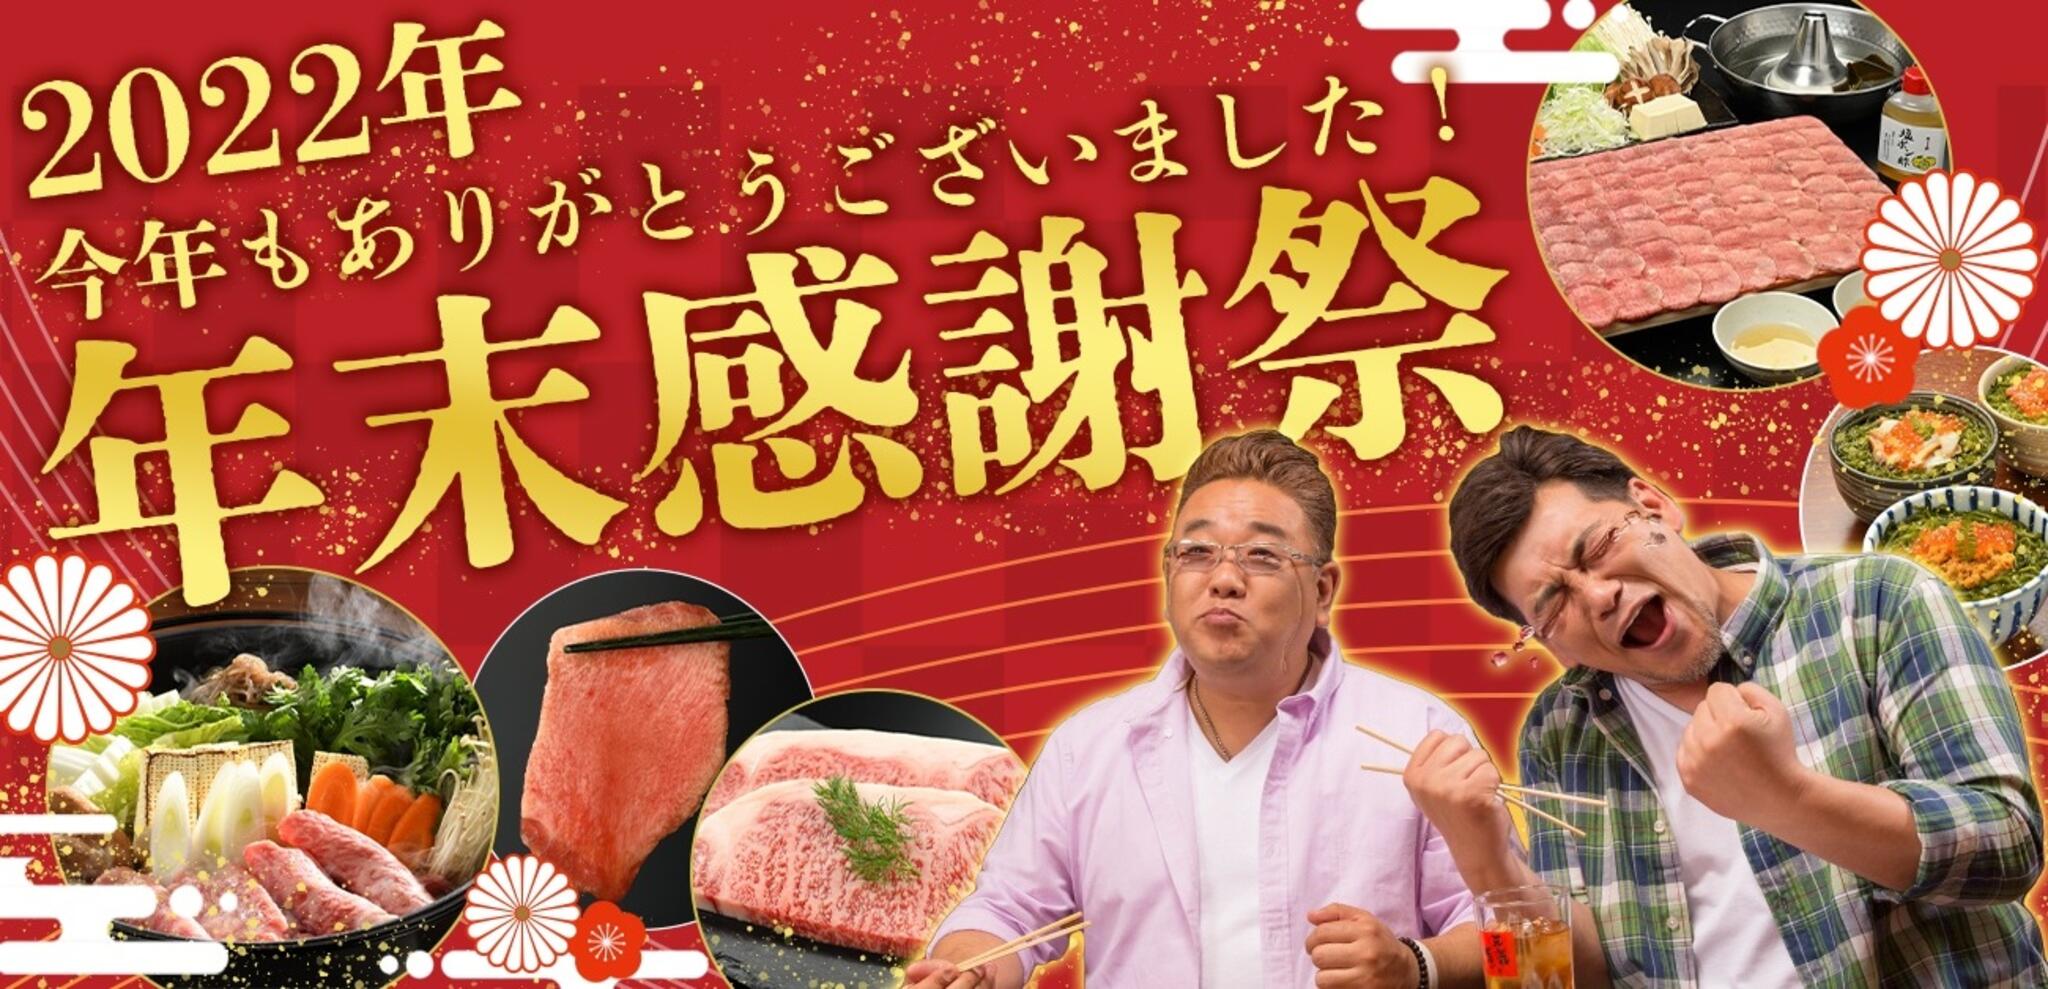 焼肉冷麺やまなか家 上田バイパス店からのお知らせ(🏳‍🌈2022年《オンラインショップ》年末感謝祭)に関する写真